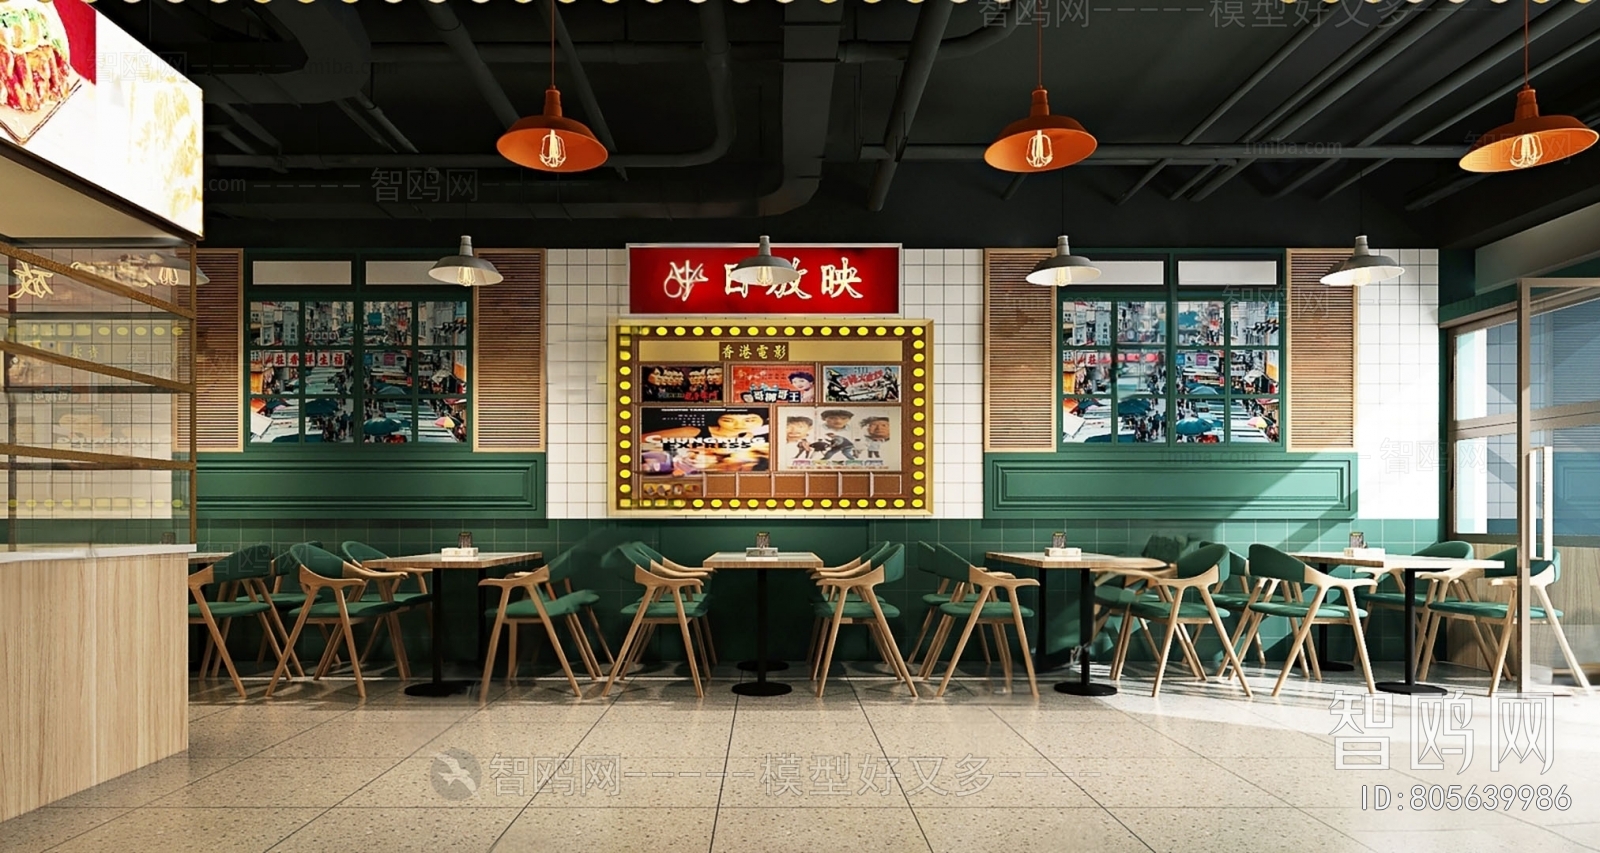 Modern Hong Kong Style Restaurant